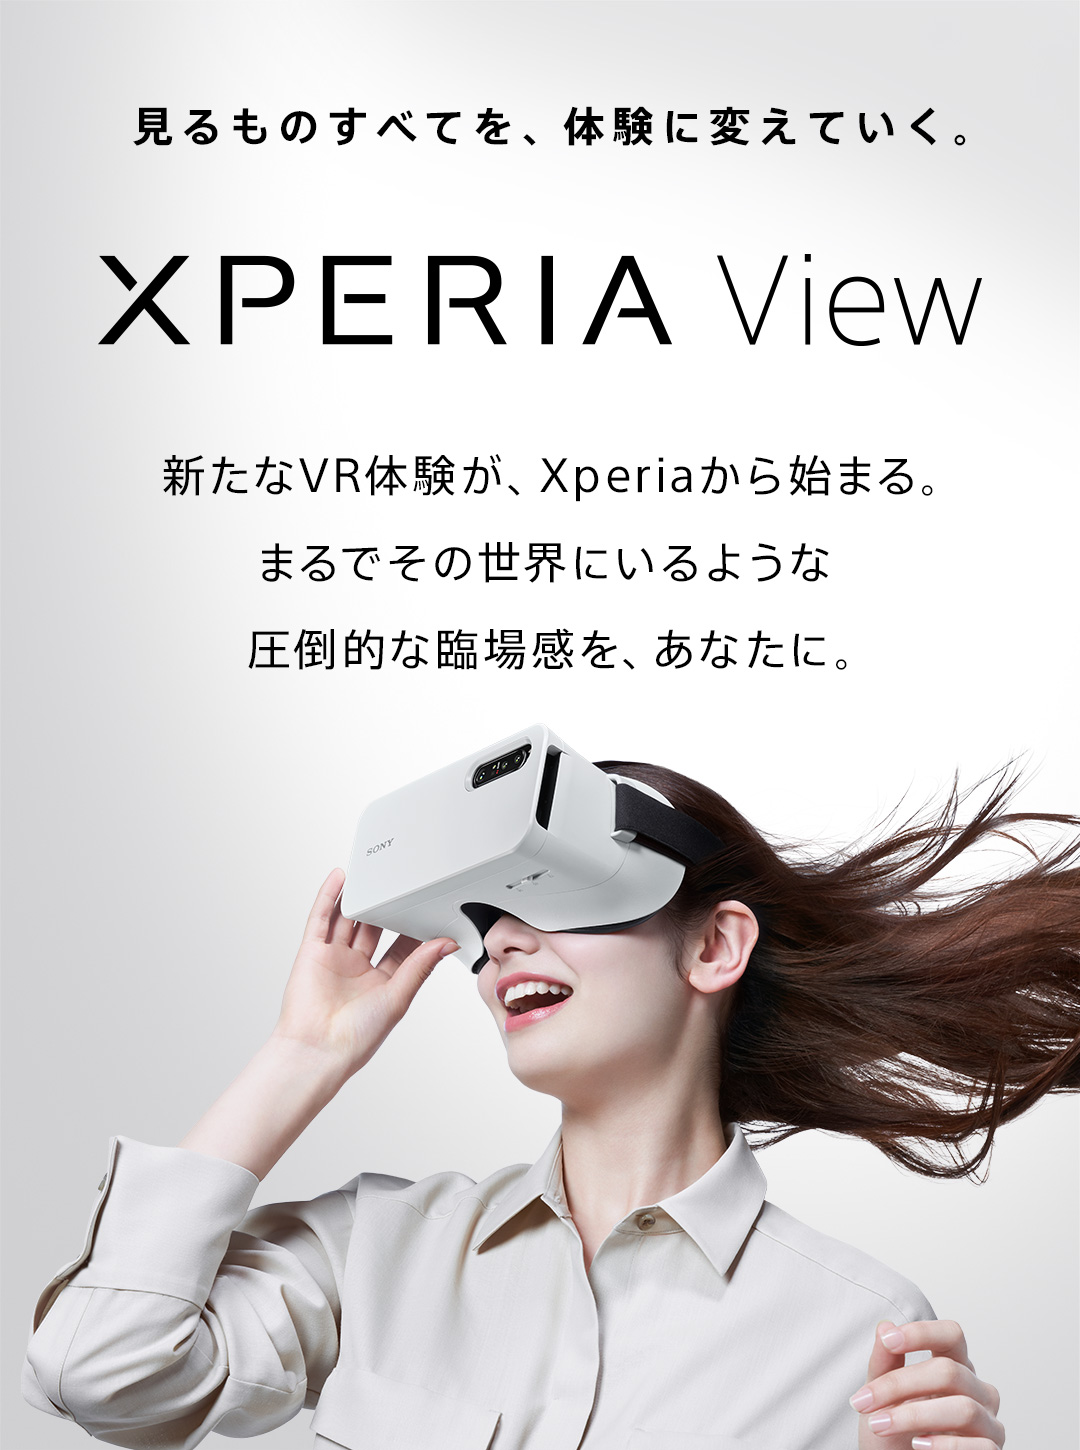 見るものすべてを、体験に変えていく。 Xperia View 新たなVR体験が、Xperiaから始まる。まるでその世界にいるような圧倒的な臨場感を、あなたに。